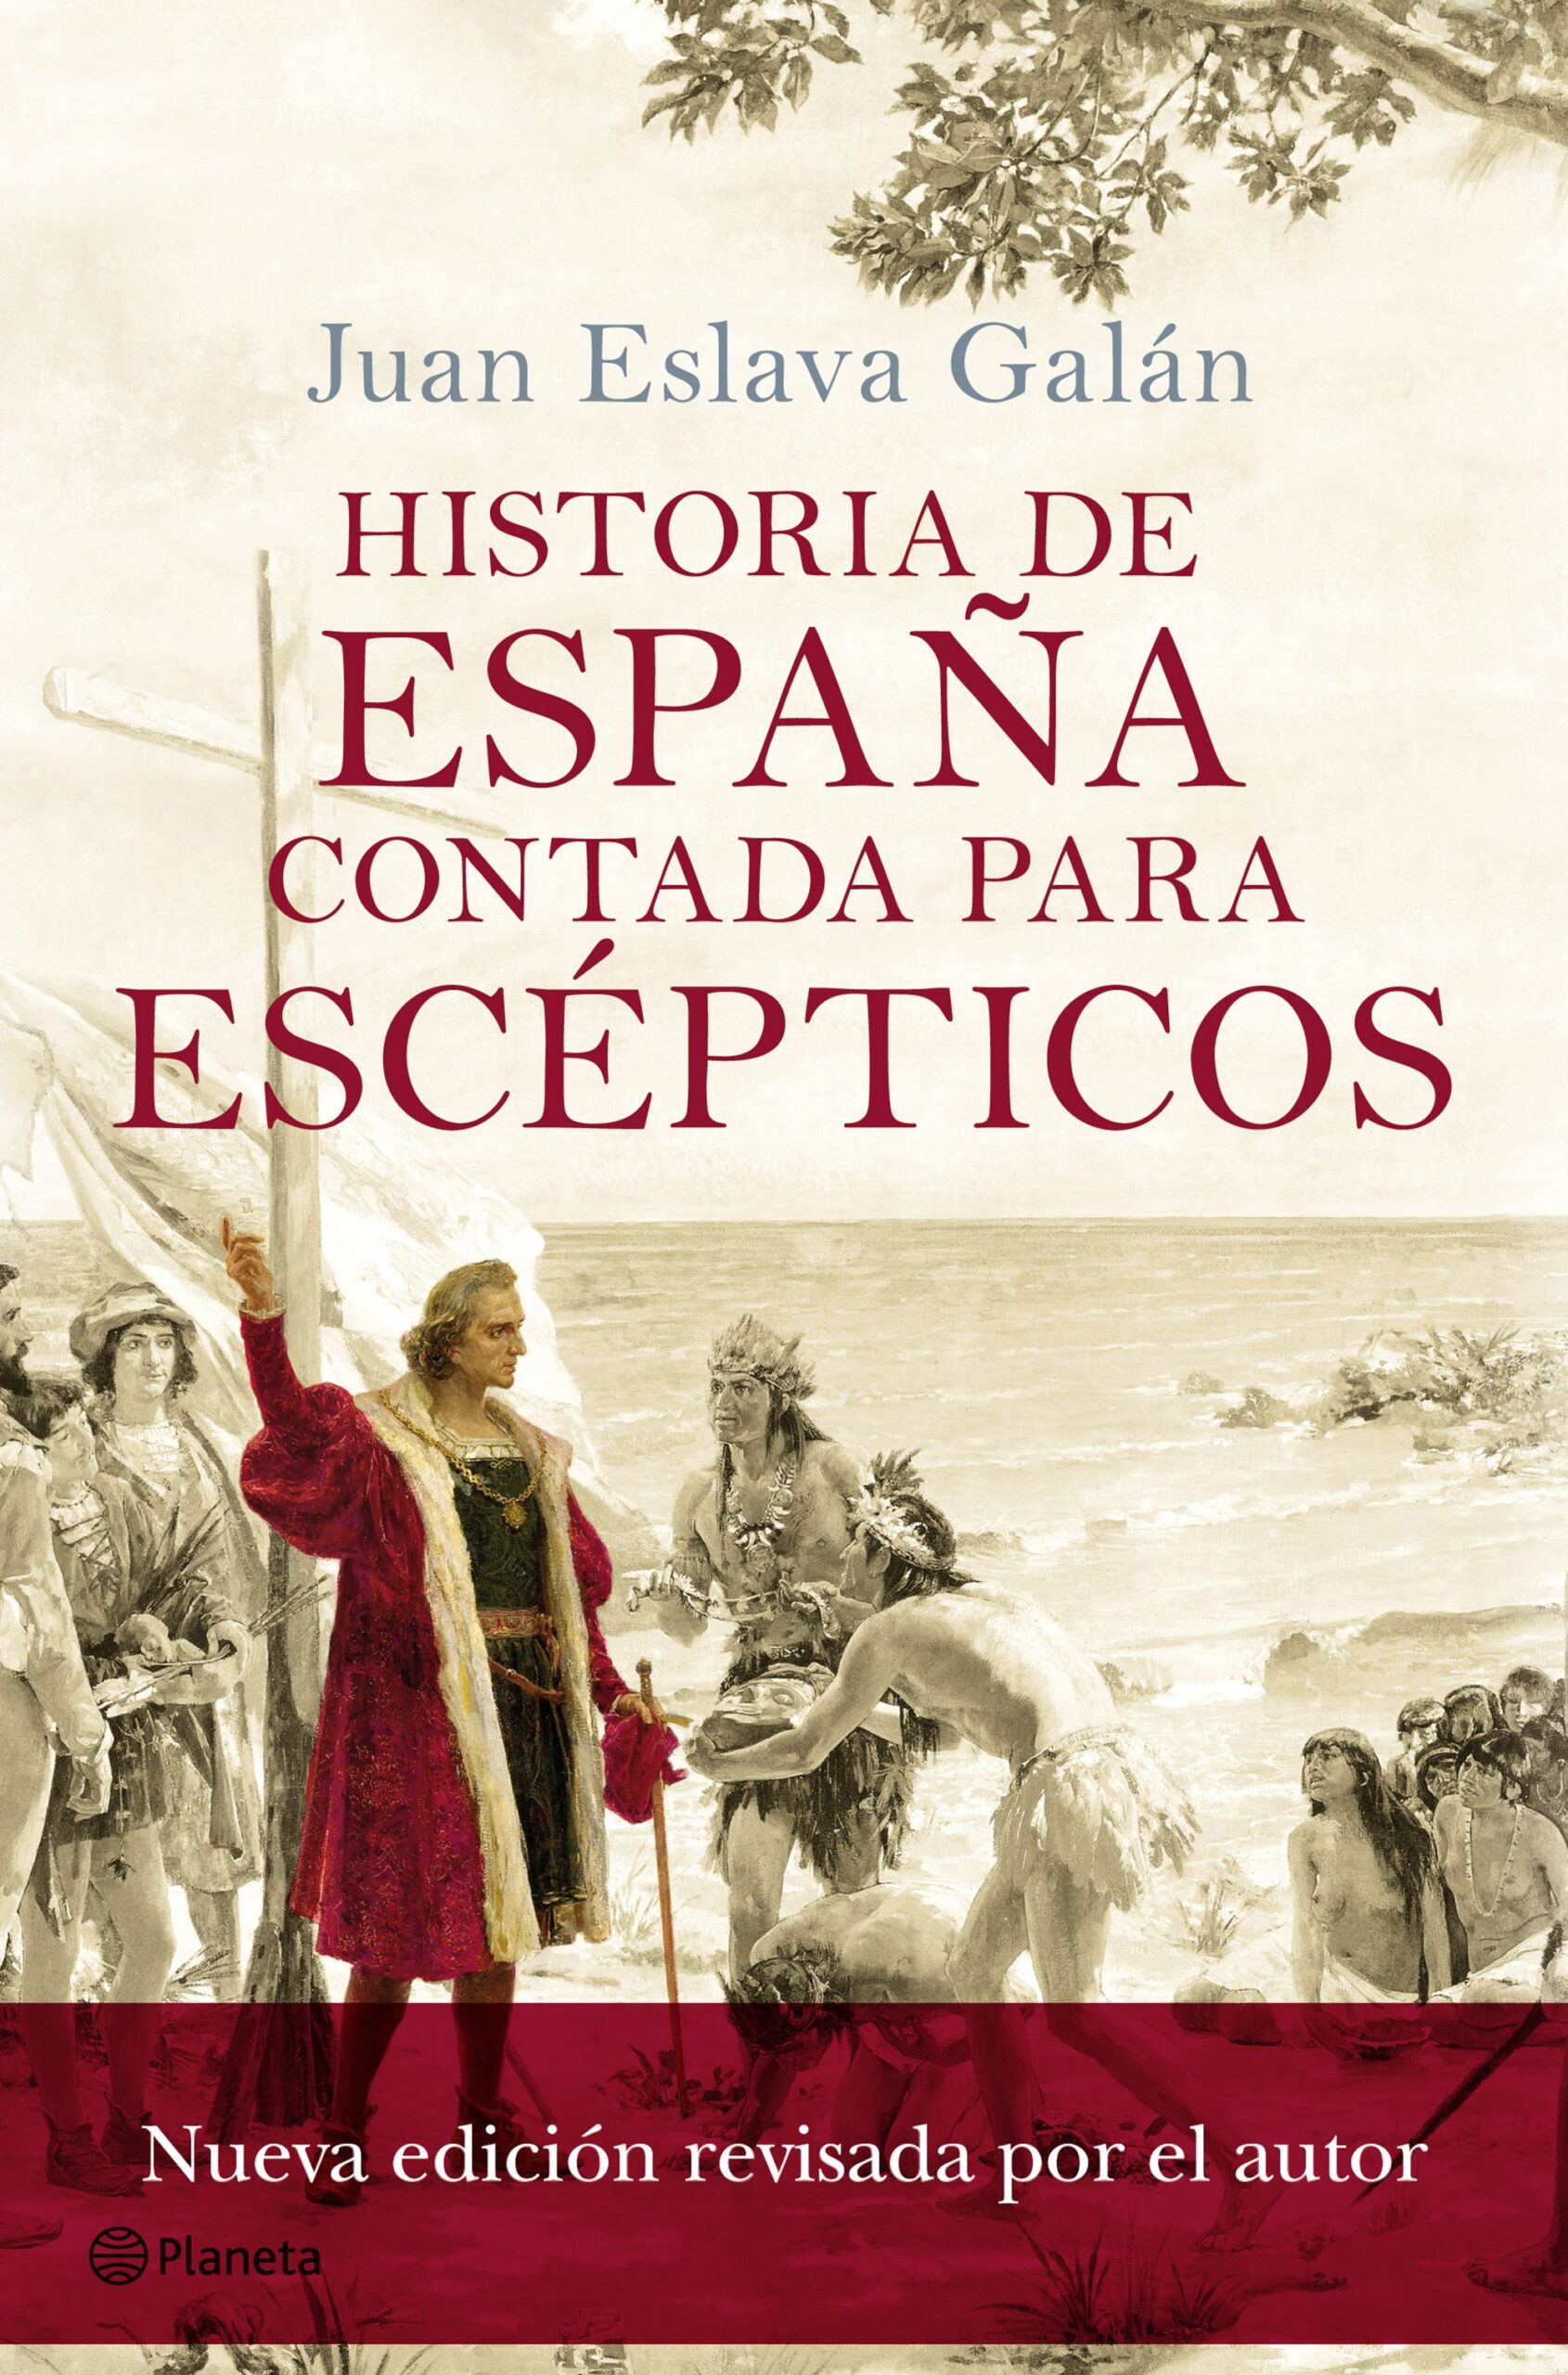 Juan Eslava Galán - Historia de España contada para escépticos